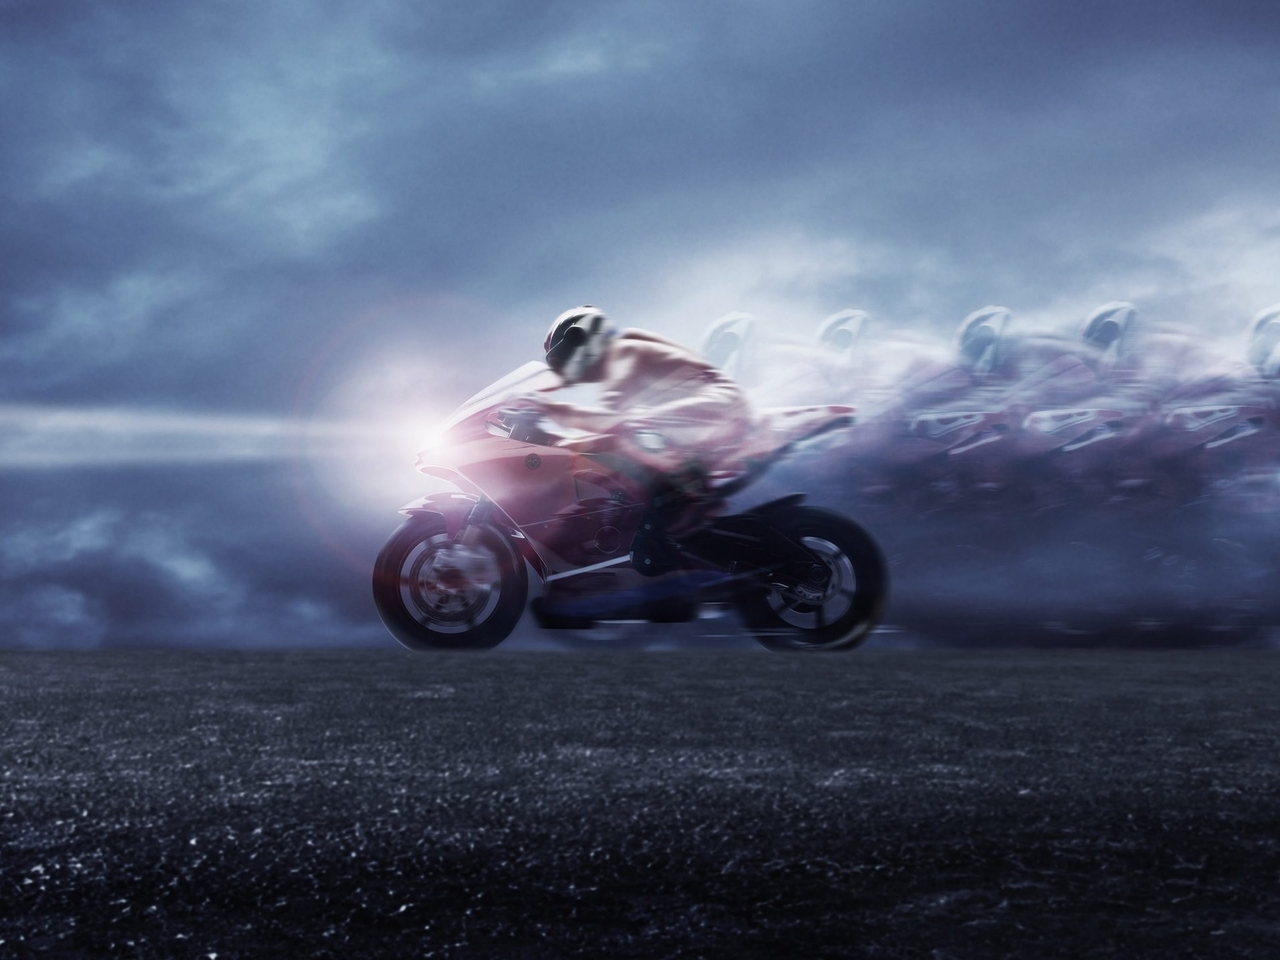 Image: Bike, racer, speed, light, sky, road